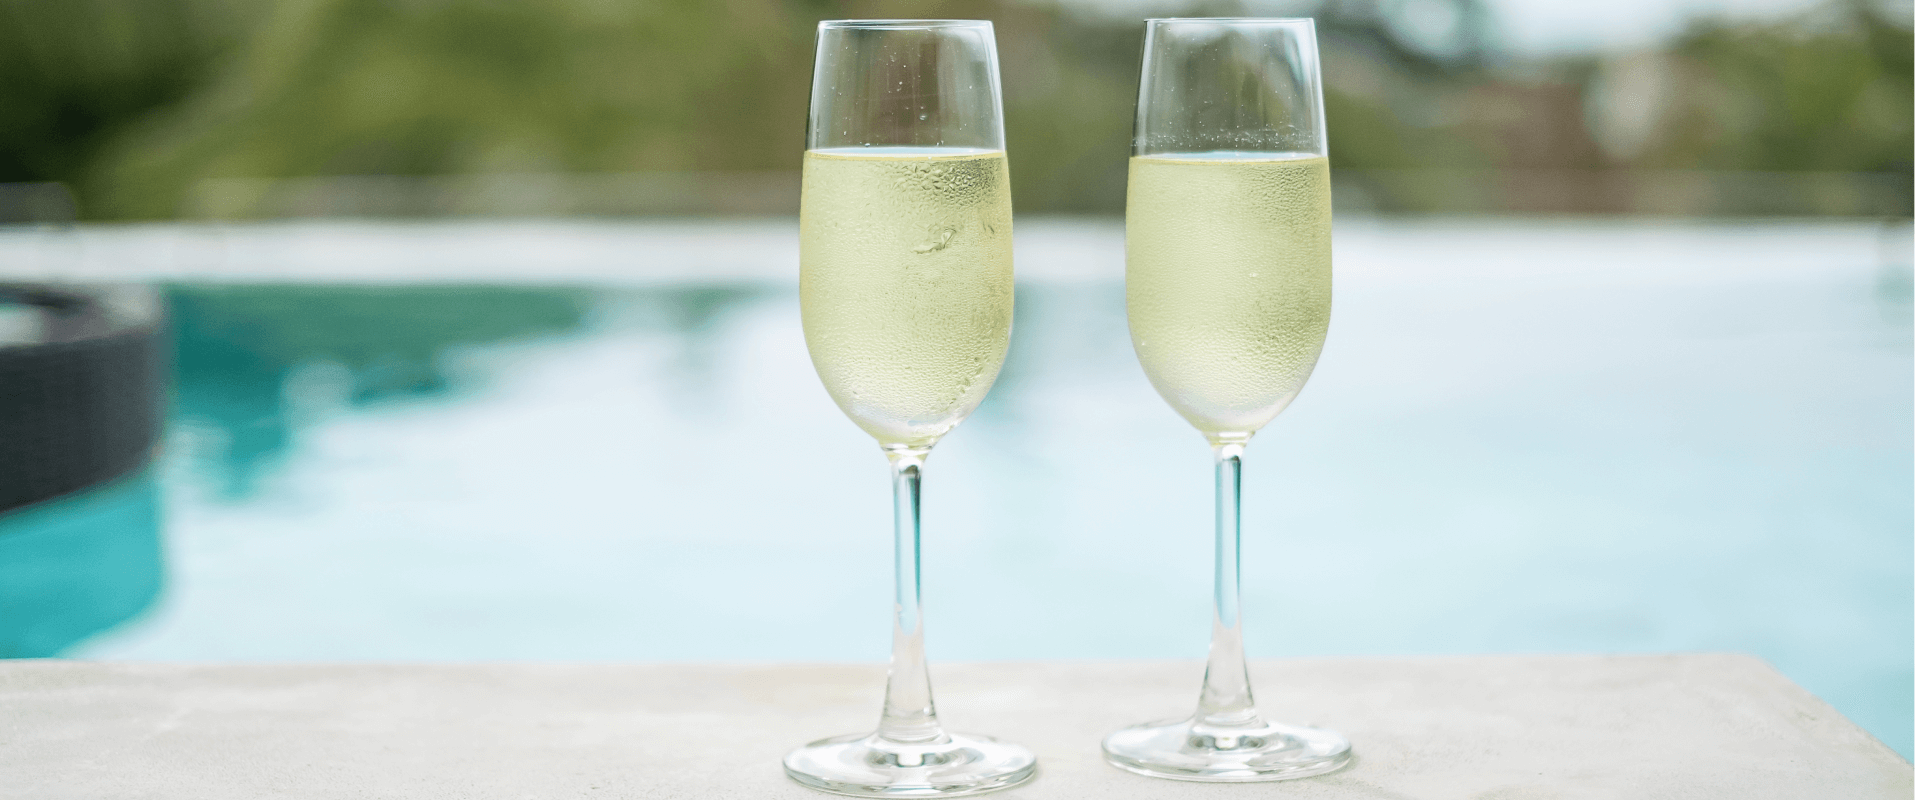 Duas taças com champagne próximas de uma piscina.